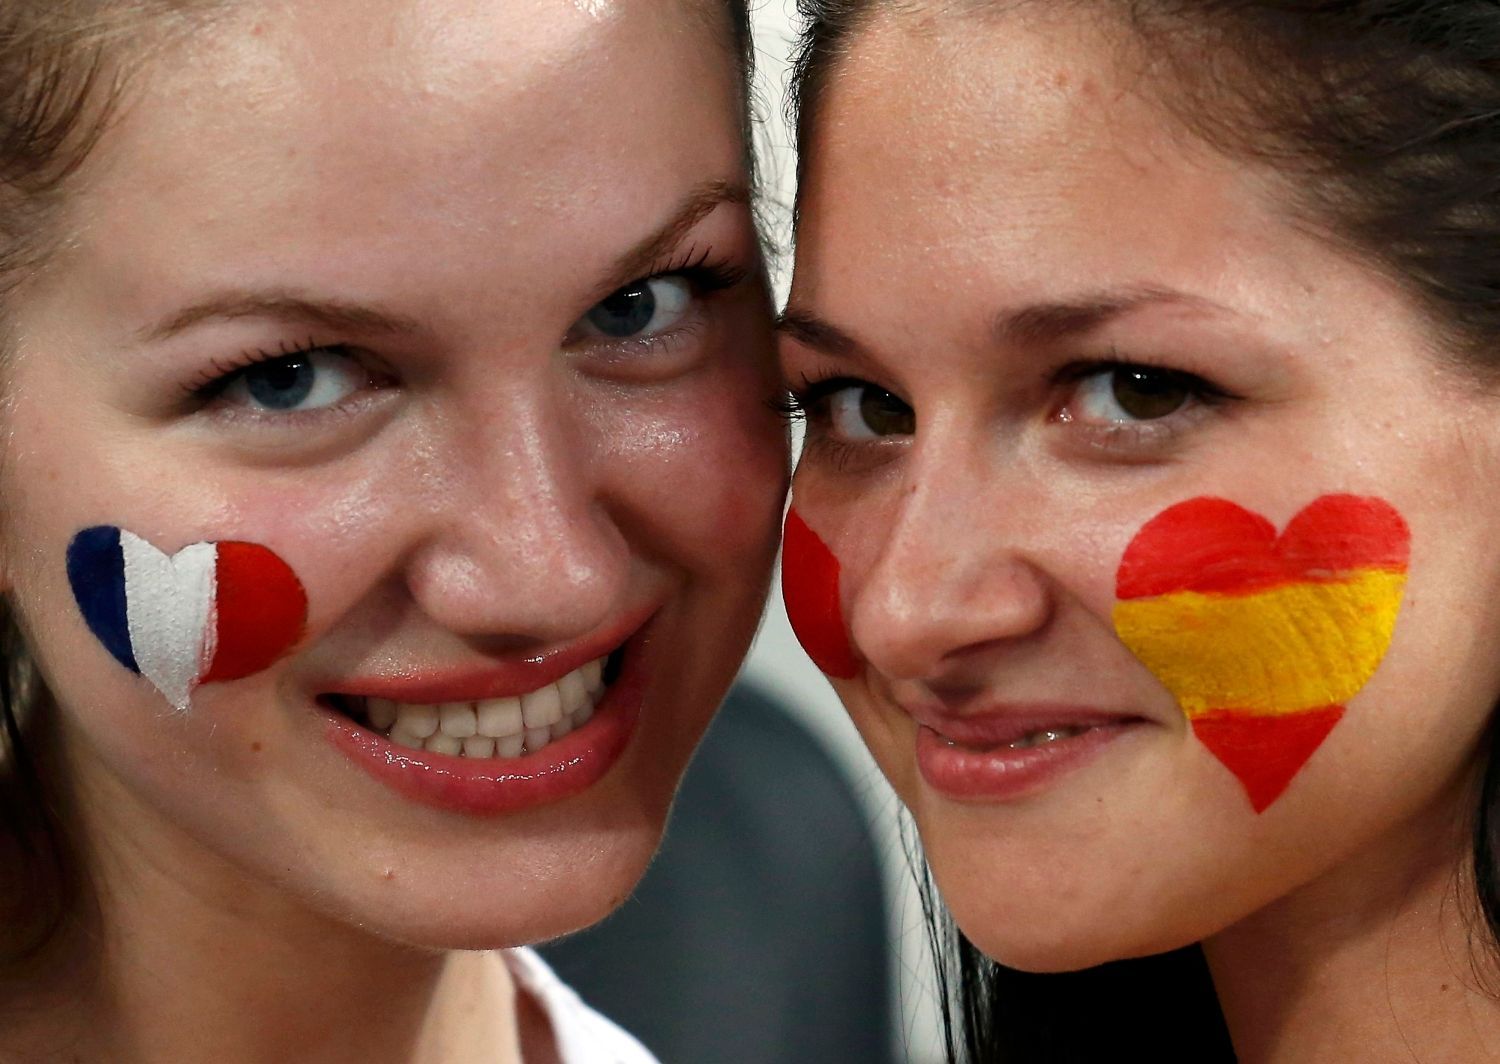 Fanoušci před čtvrtfinálovým utkáním mezi Španělskem a Francií na Euru 2012